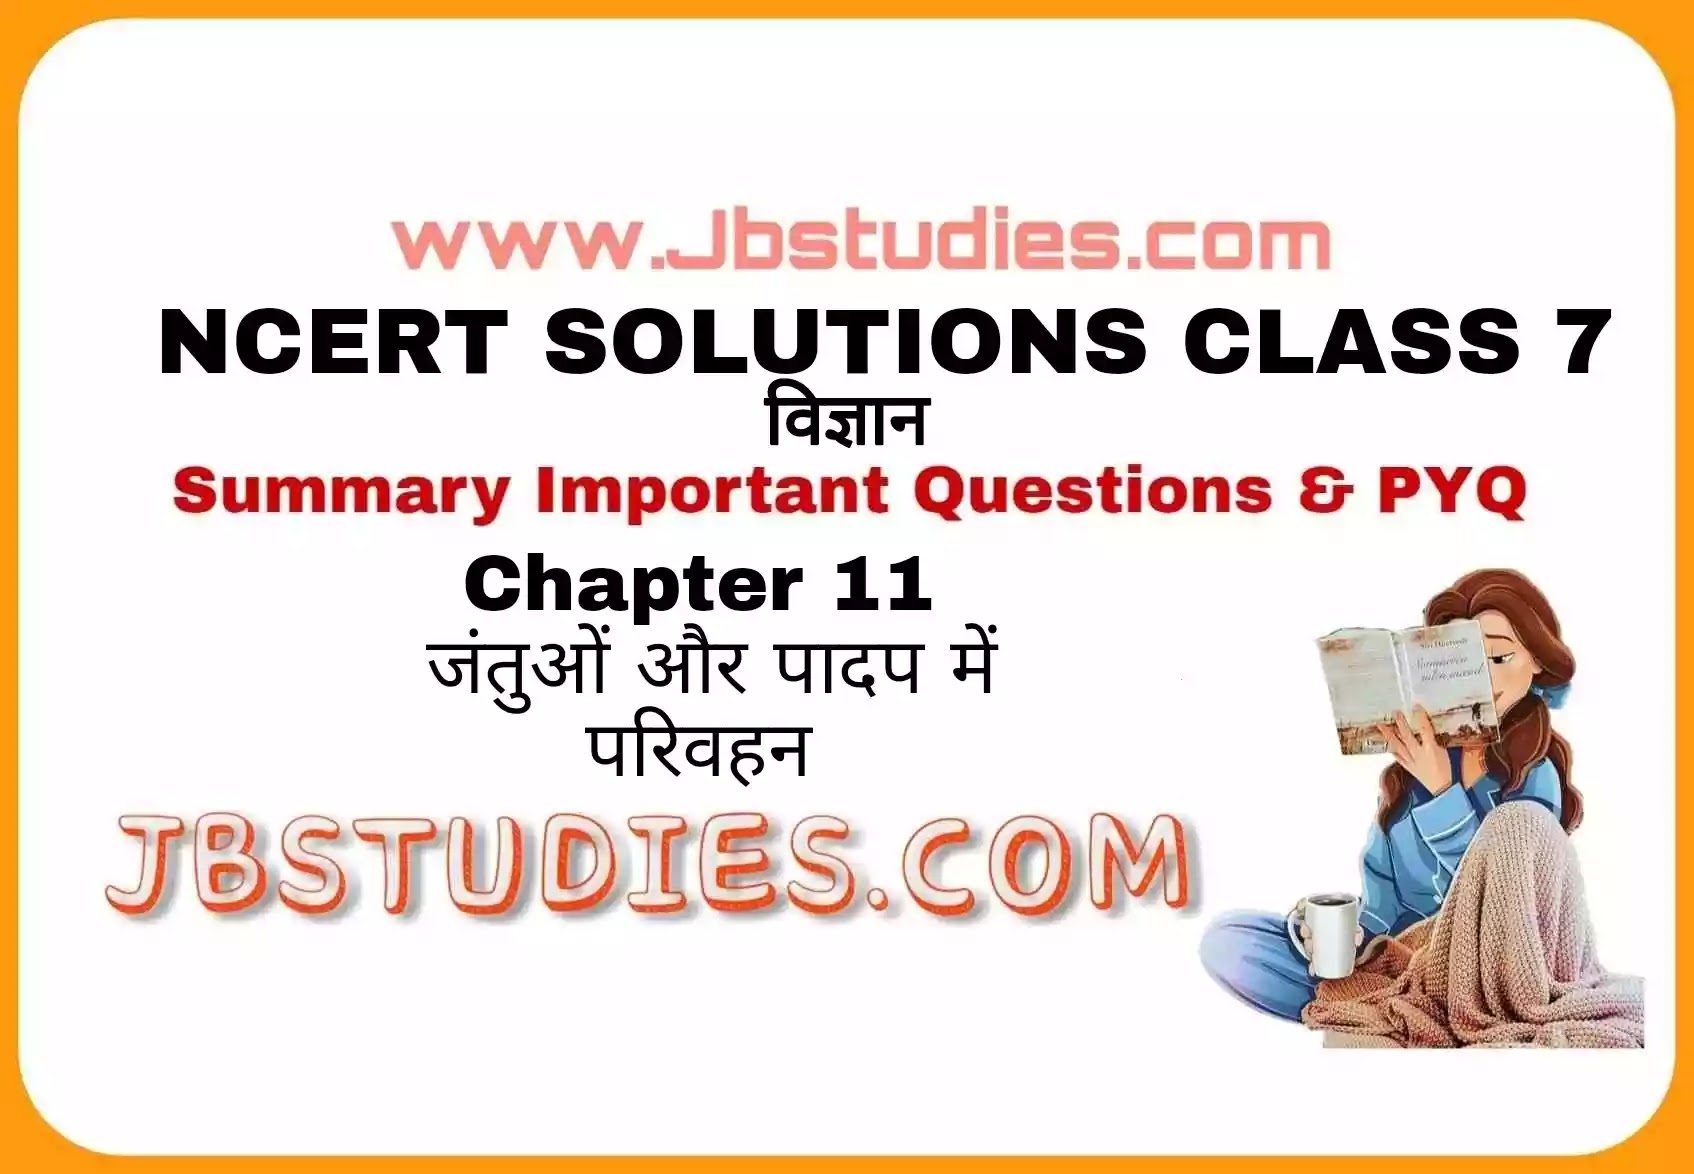 Solutions Class 7 विज्ञान Chapter-11 (जंतुओं और पादप में परिवहन)